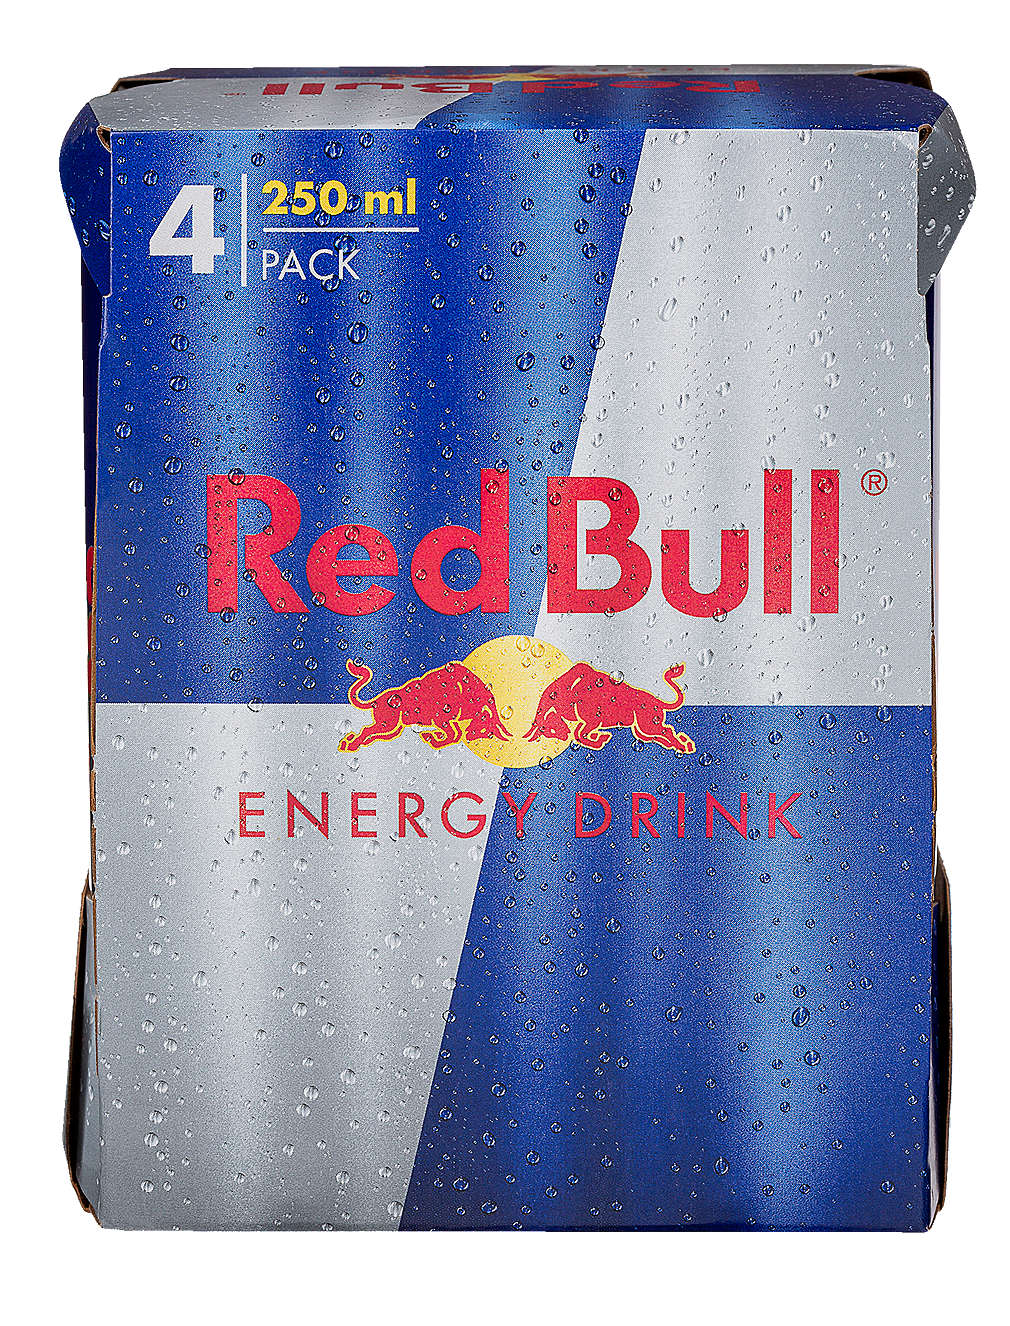 Изображение за продукта Red Bull Енергийна напитка промопакет